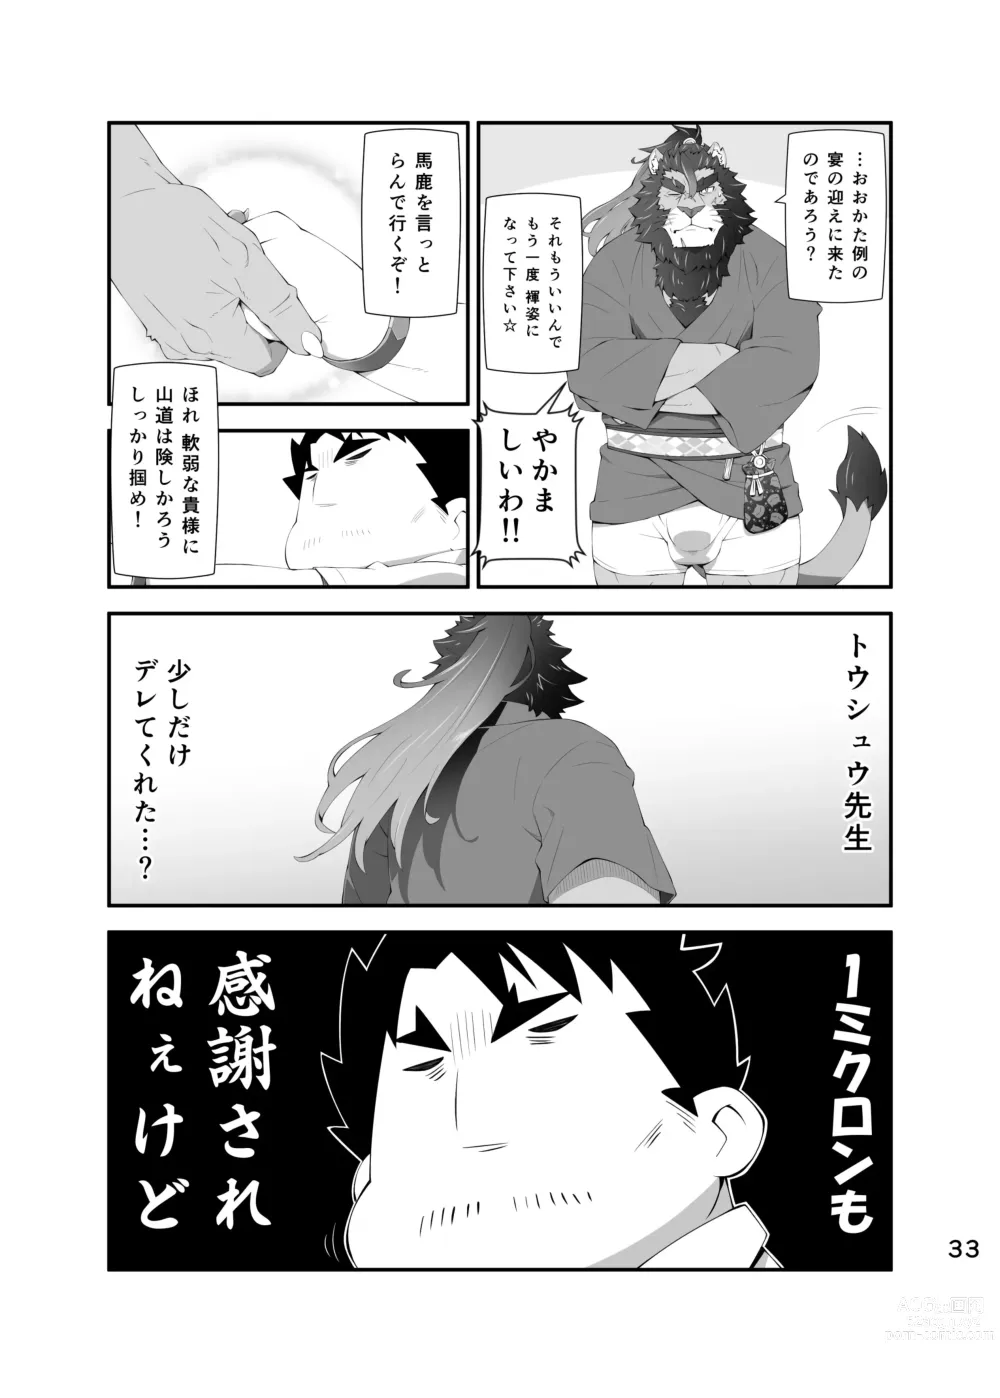 Page 32 of doujinshi LIVE AH ERO